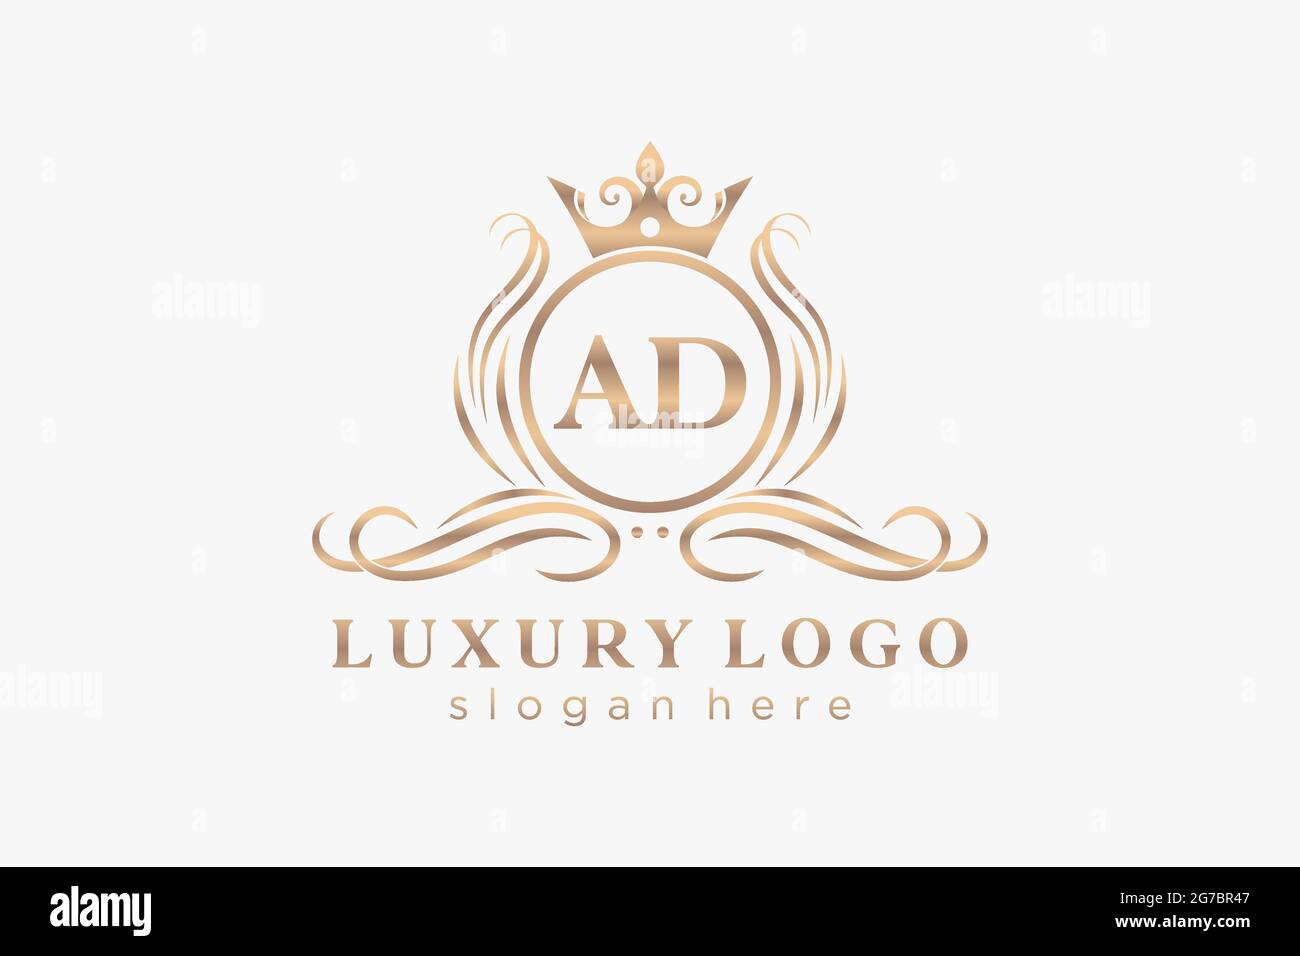 WERBEBRIEF Royal Luxury Logo Vorlage in Vektorgrafik für Restaurant, Royalty, Boutique, Cafe, Hotel, Heraldisch, Schmuck, Mode und andere Vektor illustrr Stock Vektor